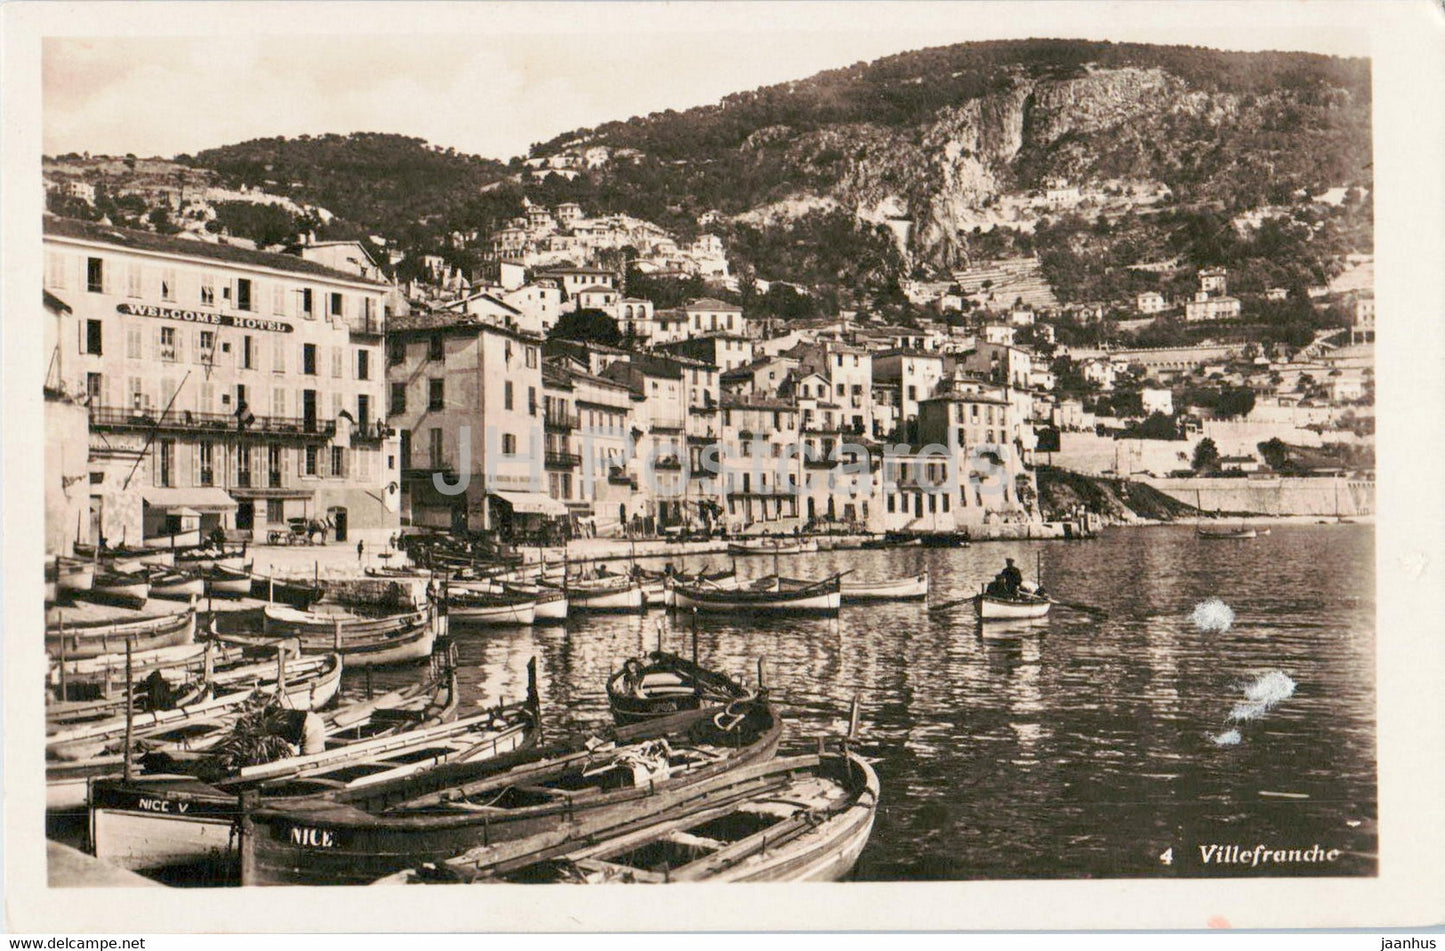 Villefranche - boat - 4 - old postcard - 1932 - France - used - JH Postcards